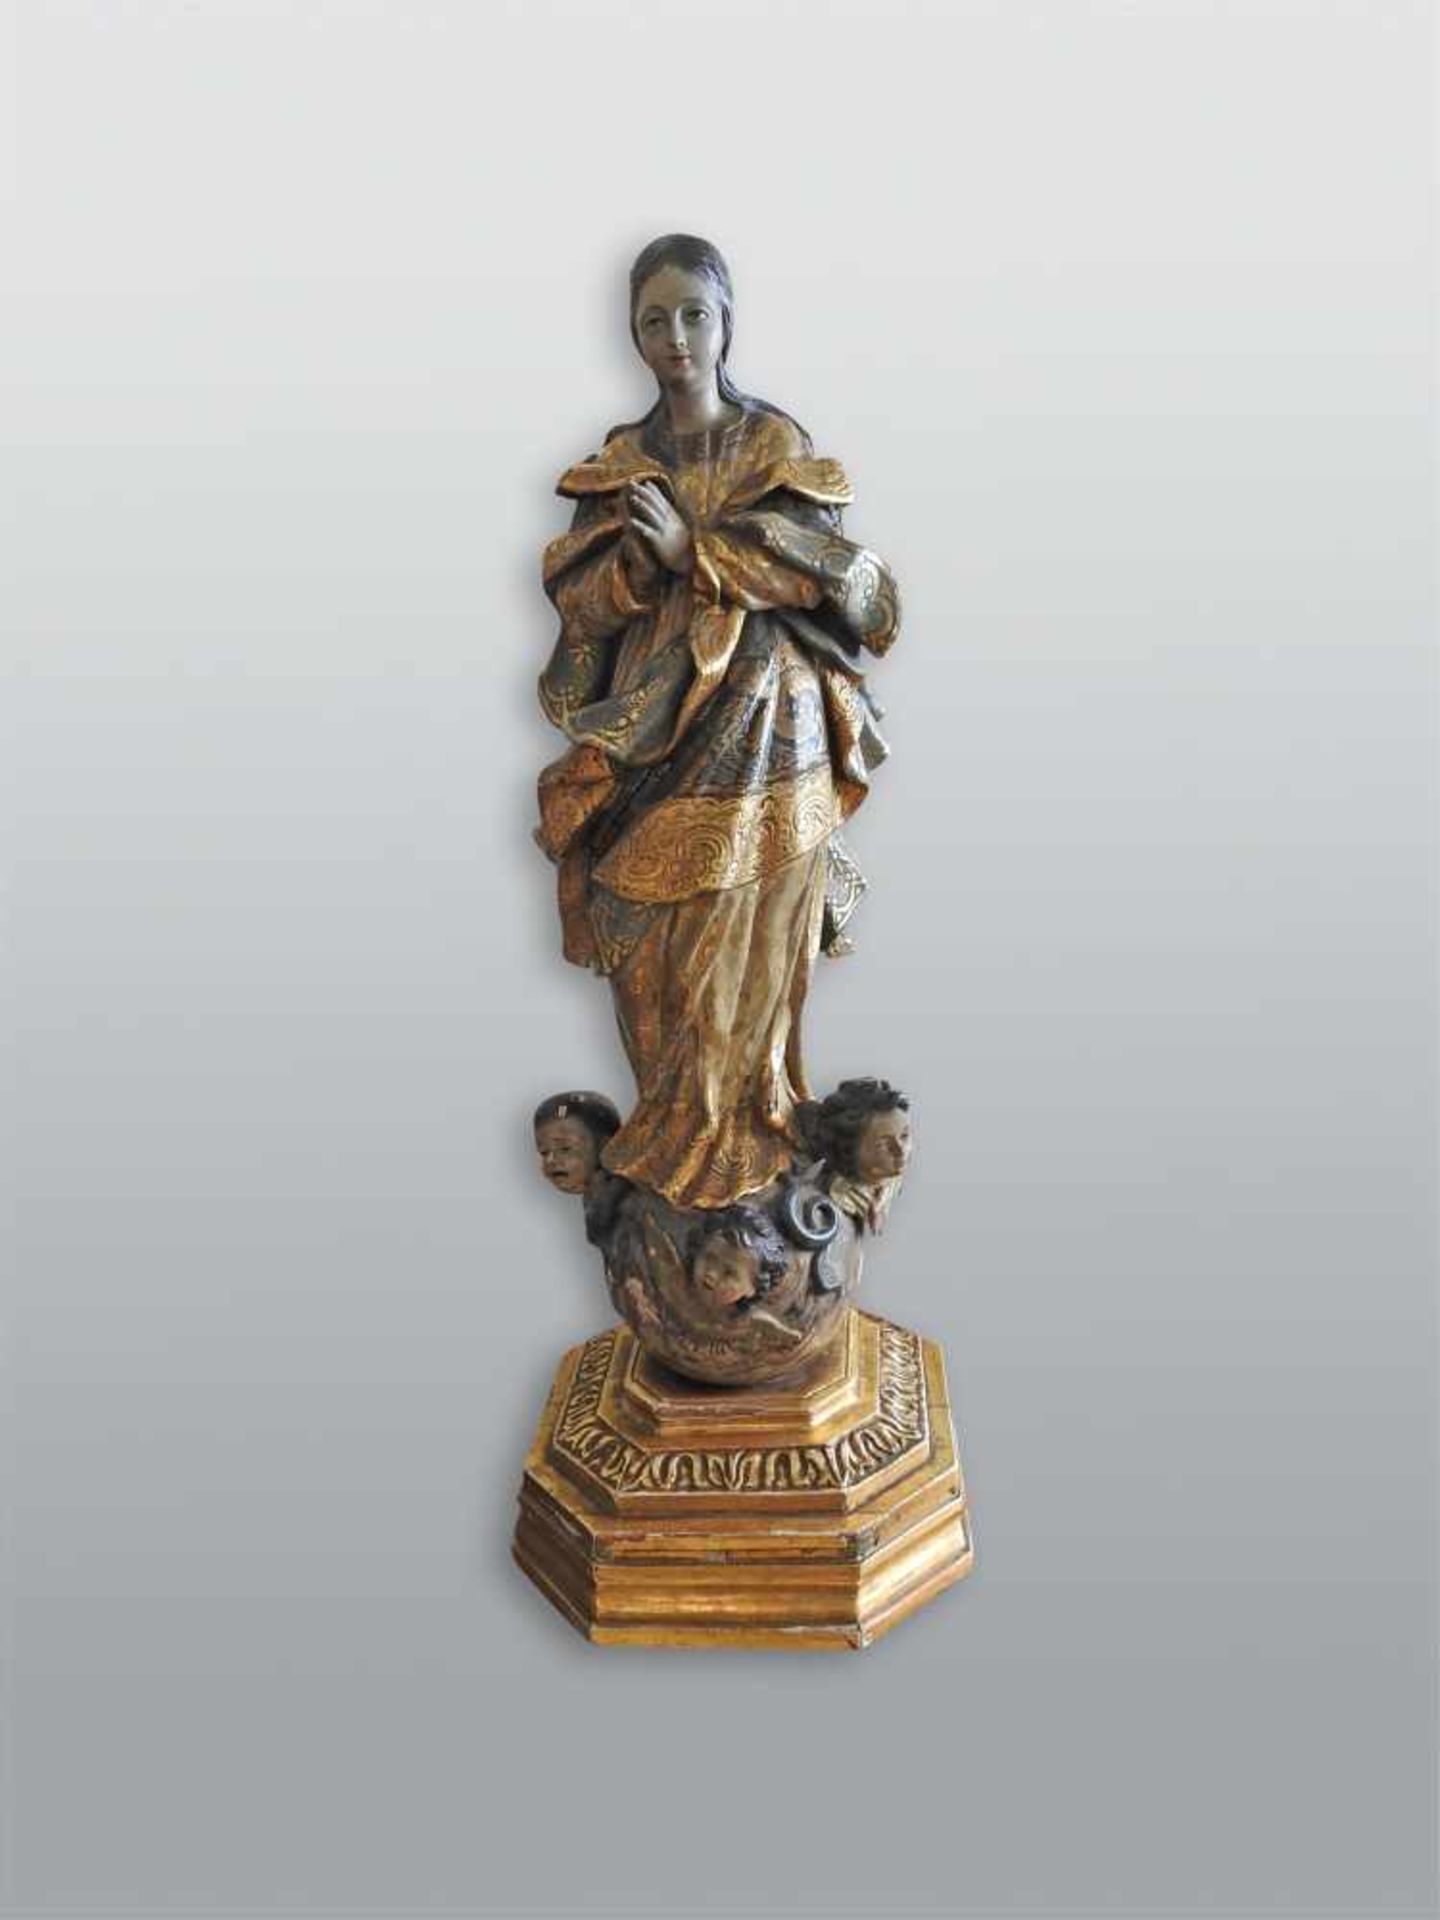 Betende Marienfigur auf verzierter WeltkugelHolz geschnitzt, farbig gefasst. Große und realistisch